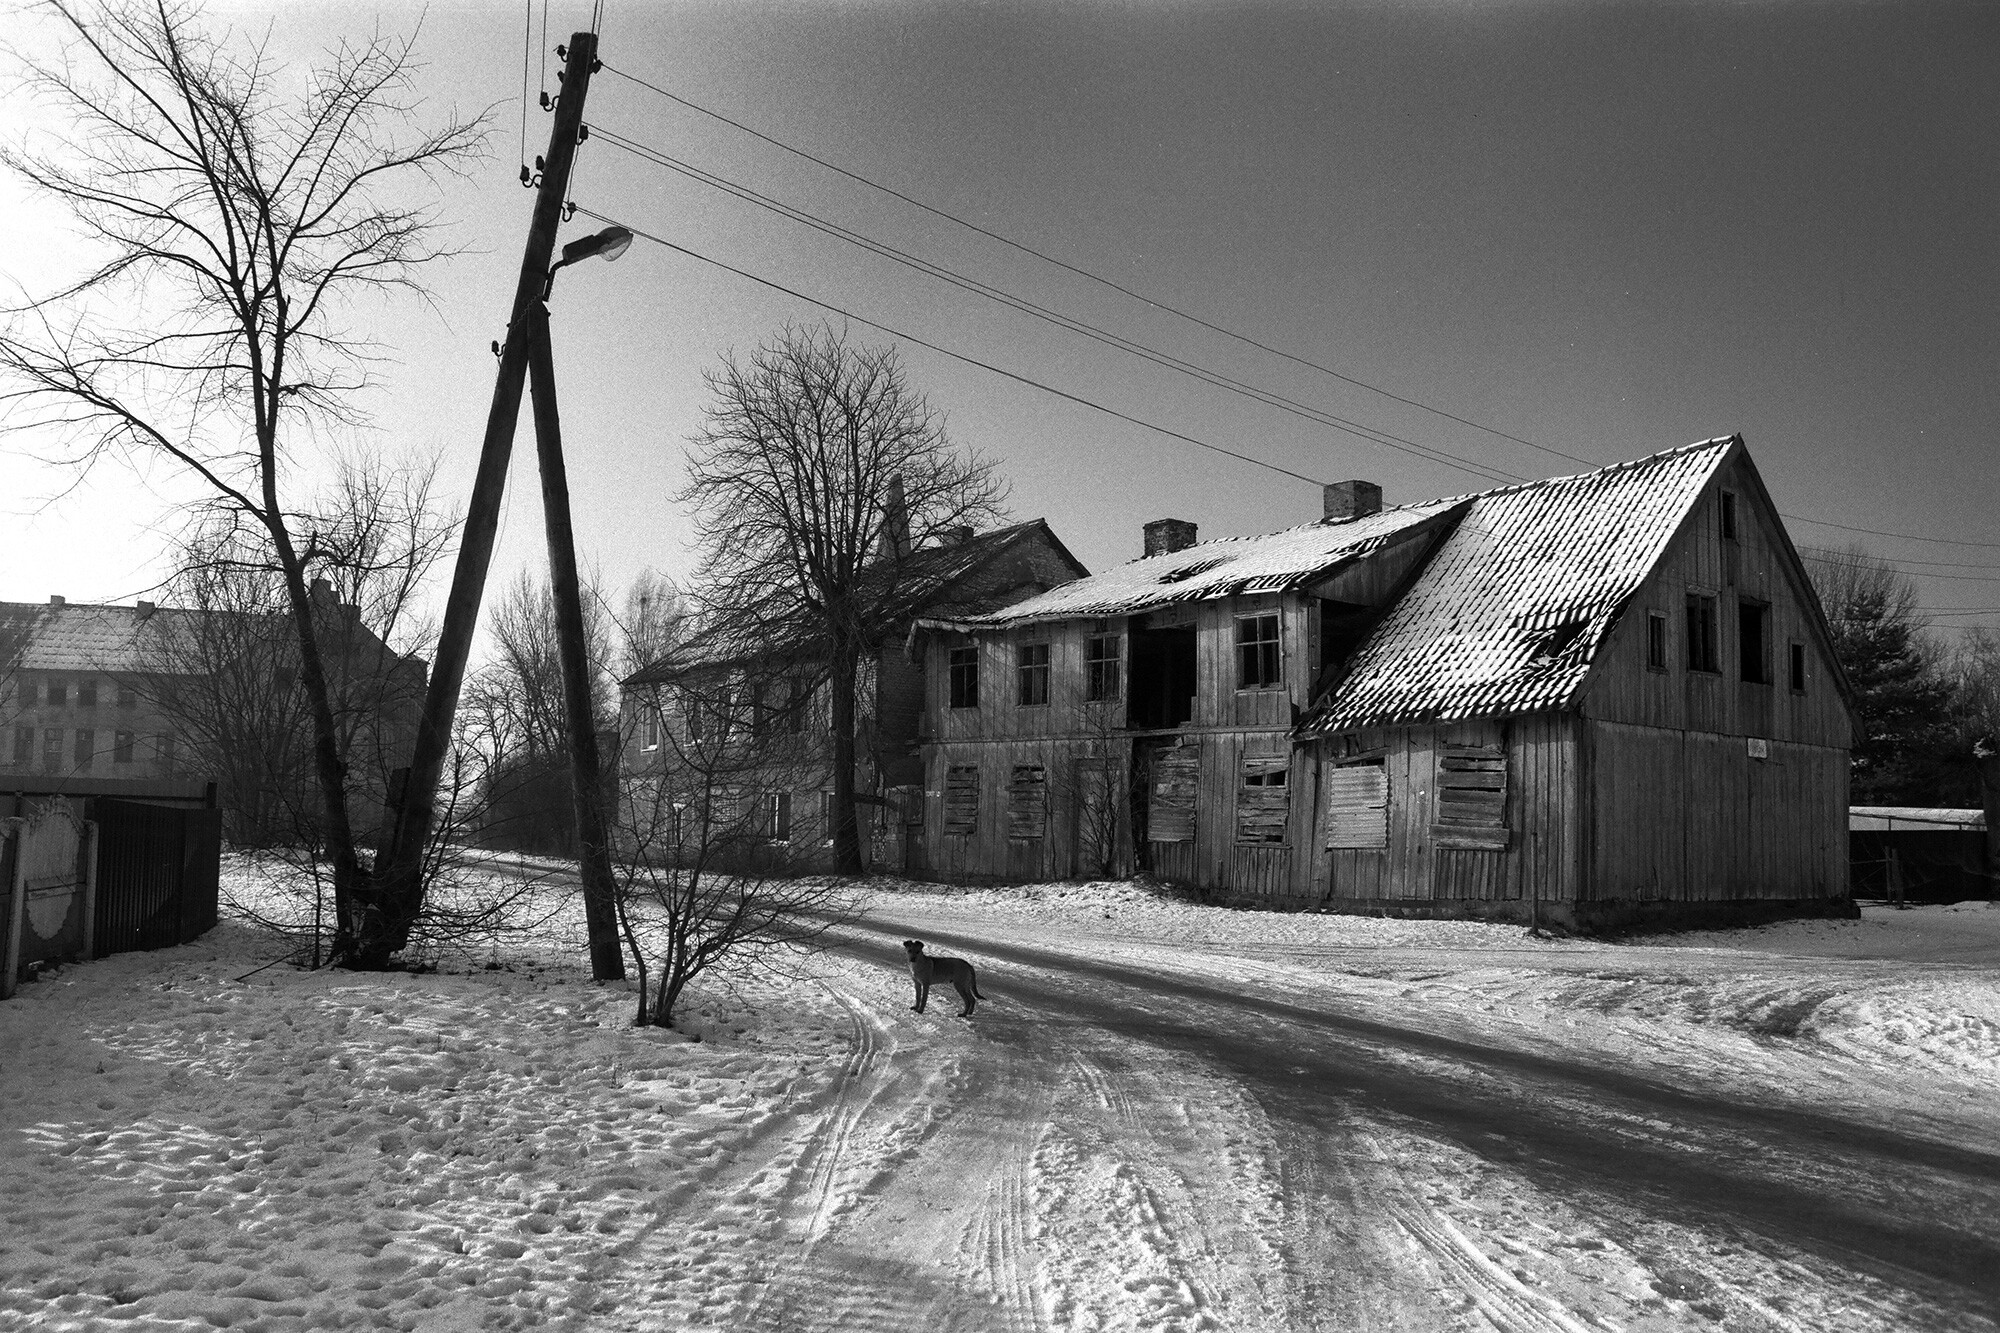 Чехово, Калининградская область, 2014 год. Фотограф Борис Регистер